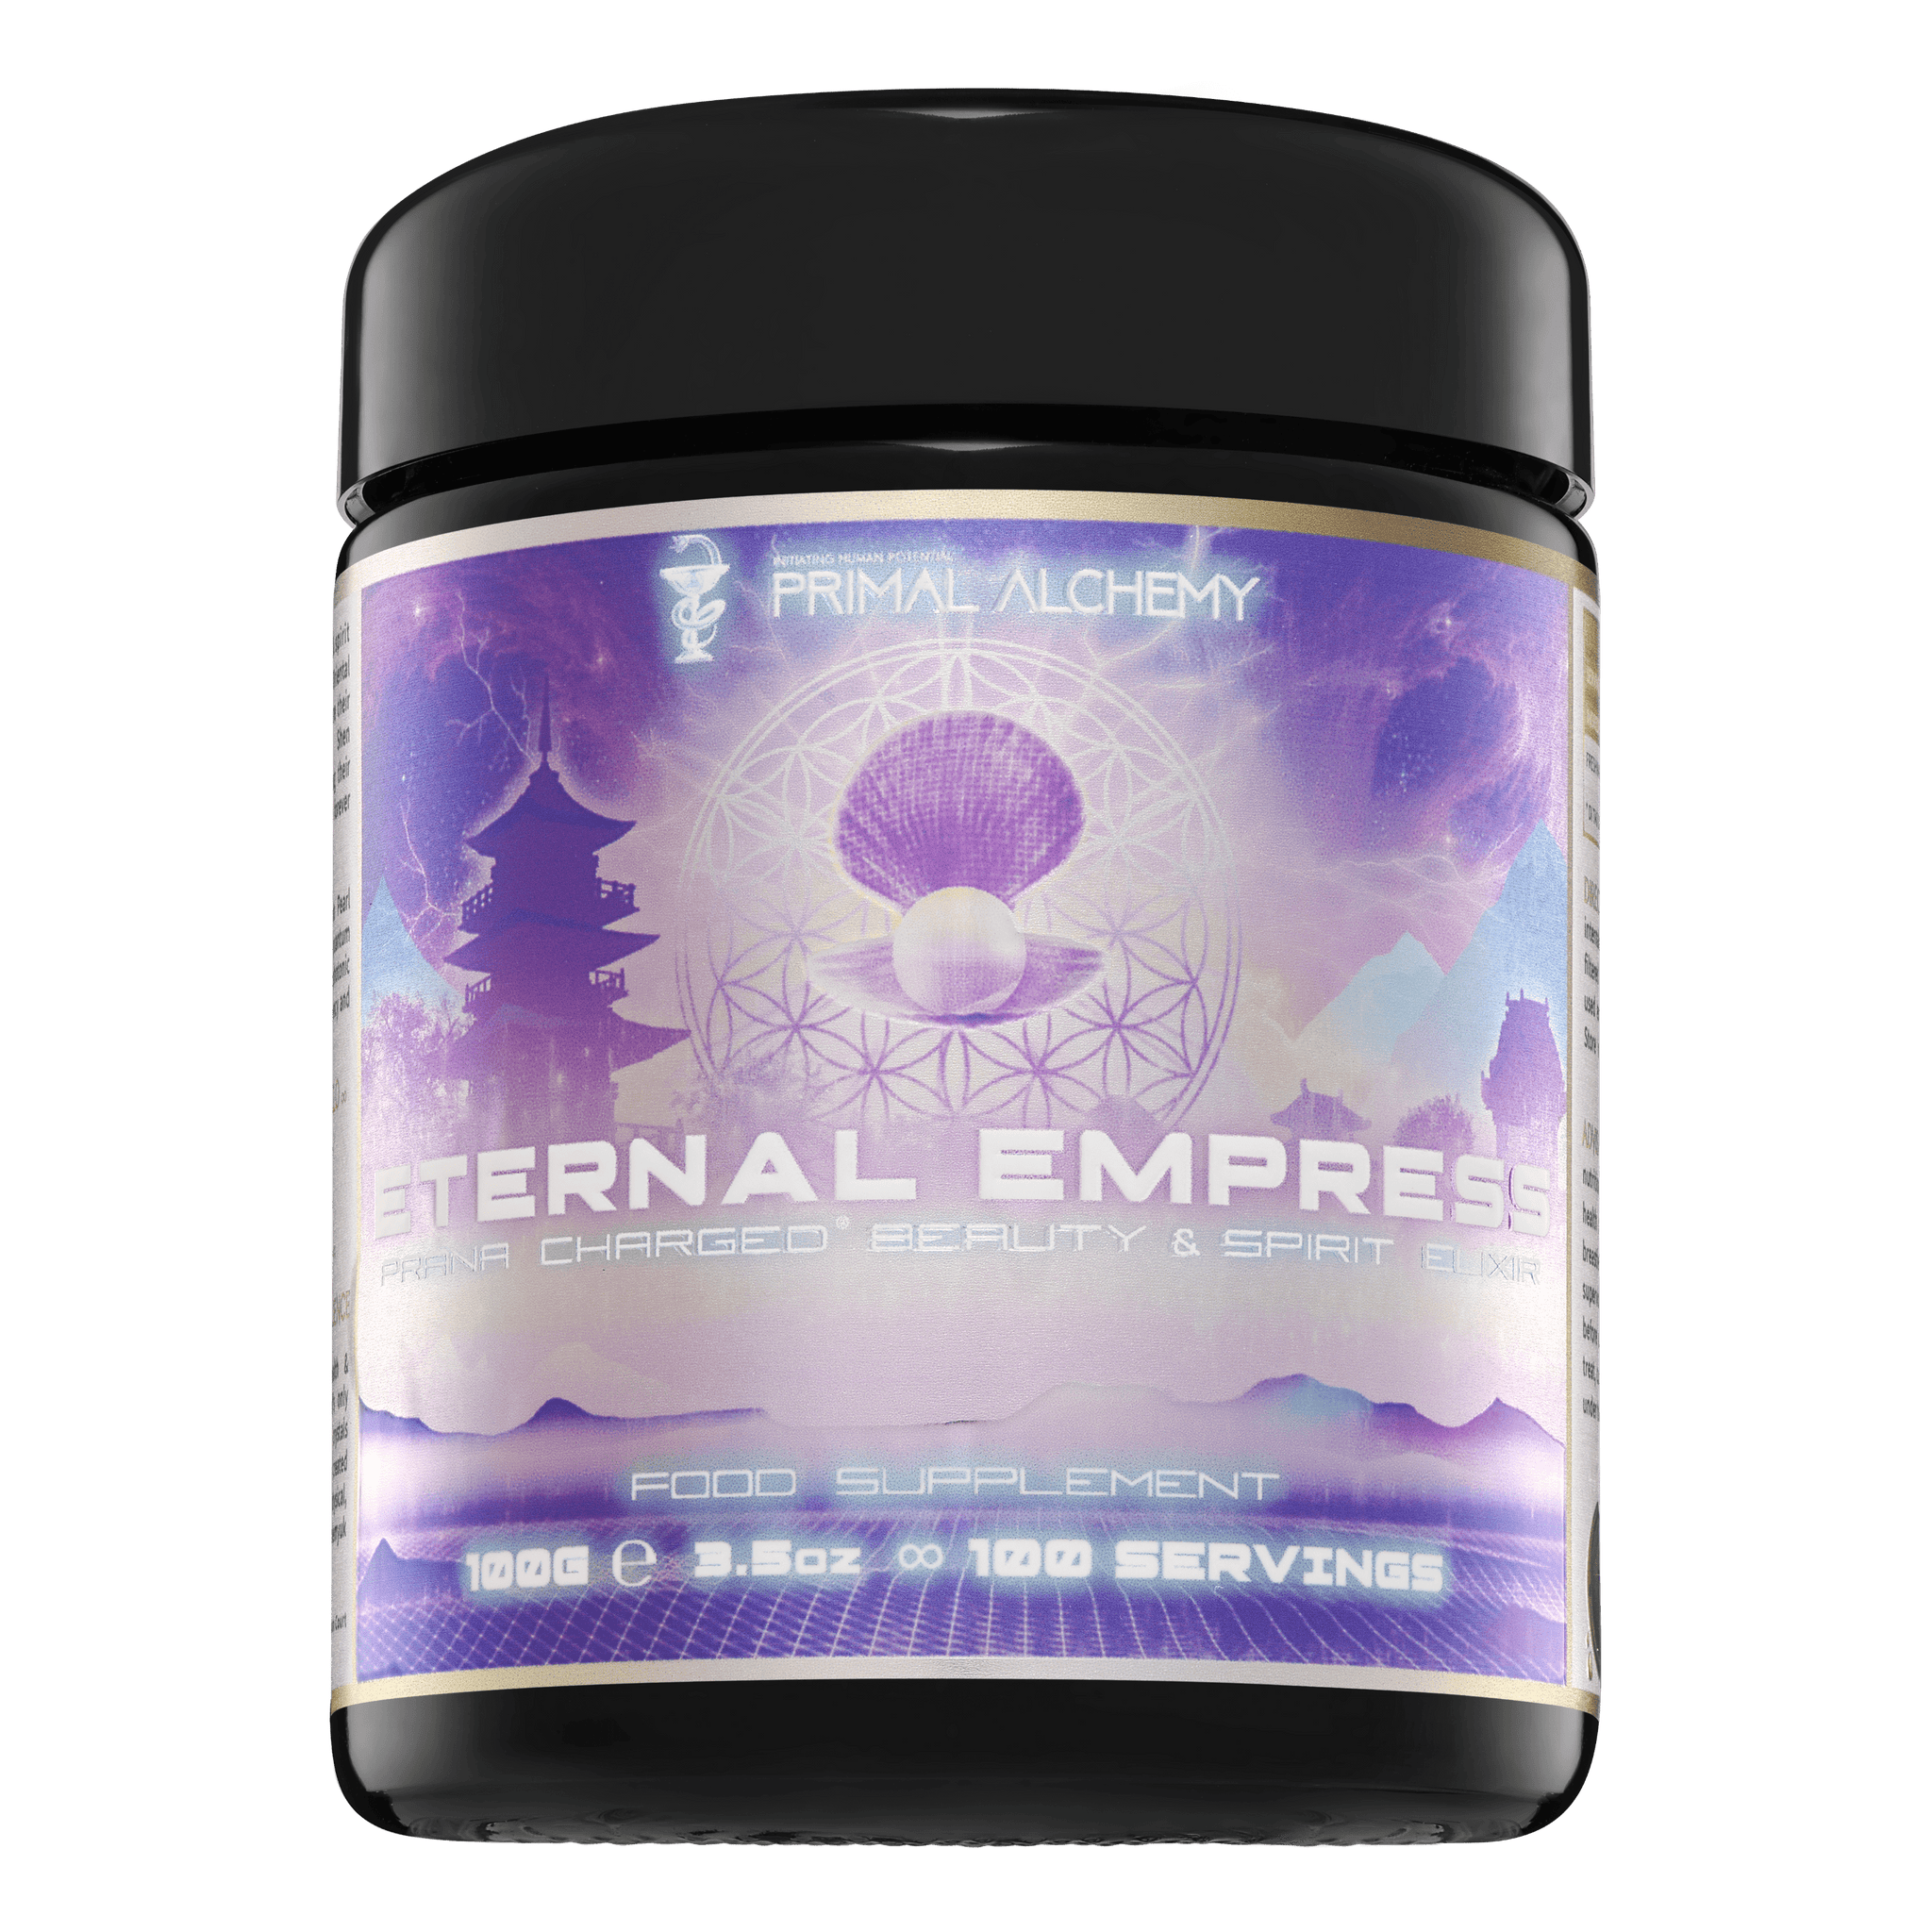 Eternal Empress ∞ Prana Charged® Beauty & Spirit Elixir